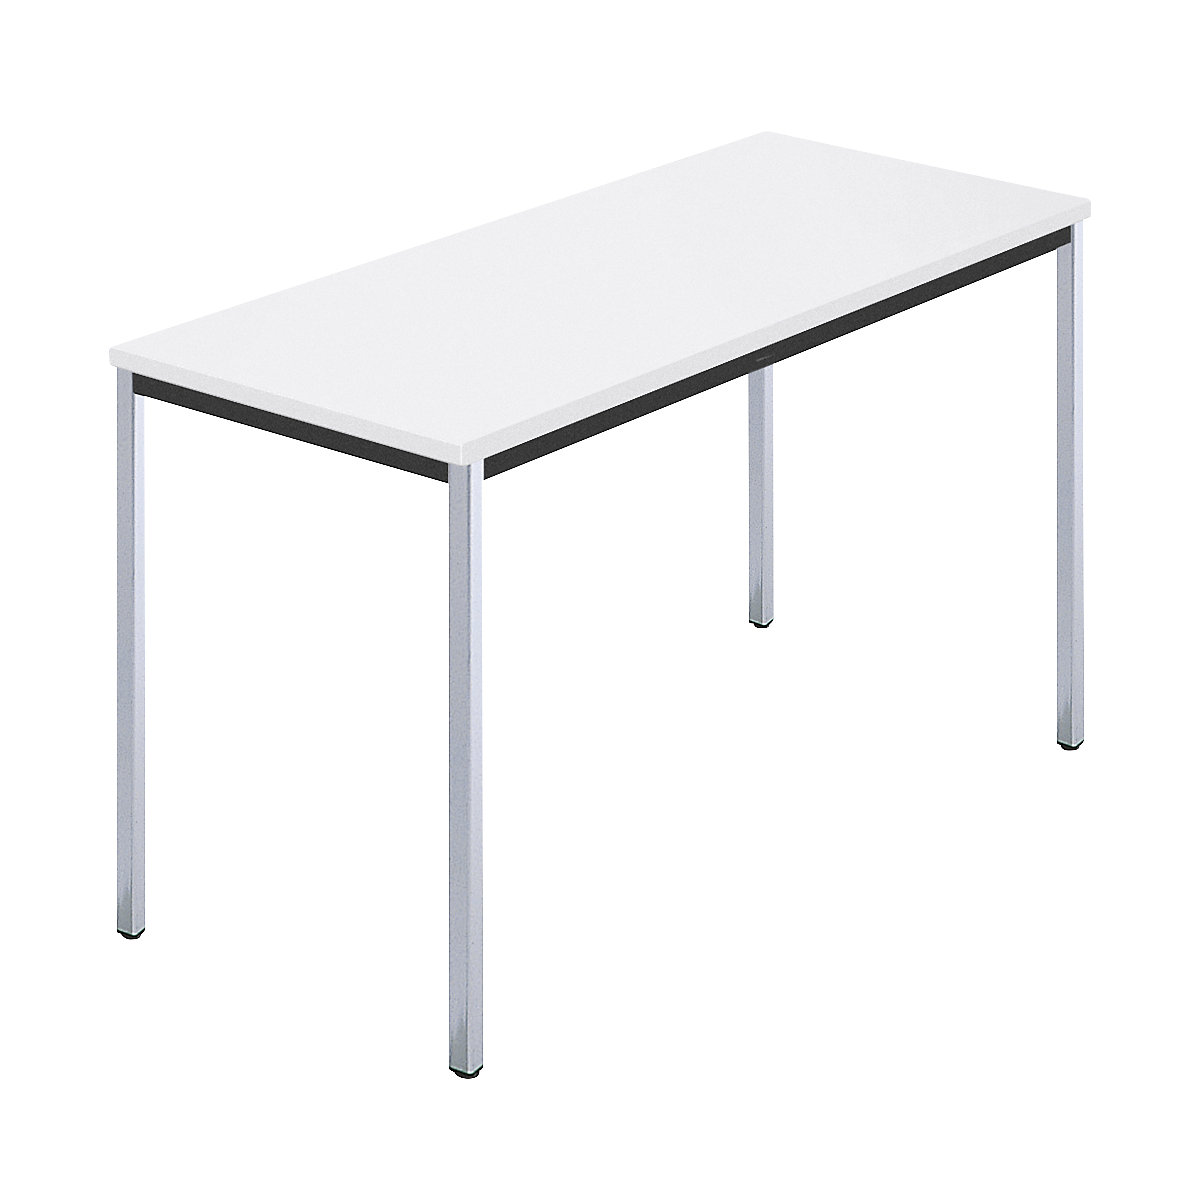 Pravokutni stol, kromirana četverokutna cijev, ŠxD 1200 x 600 mm, u bijeloj boji-6